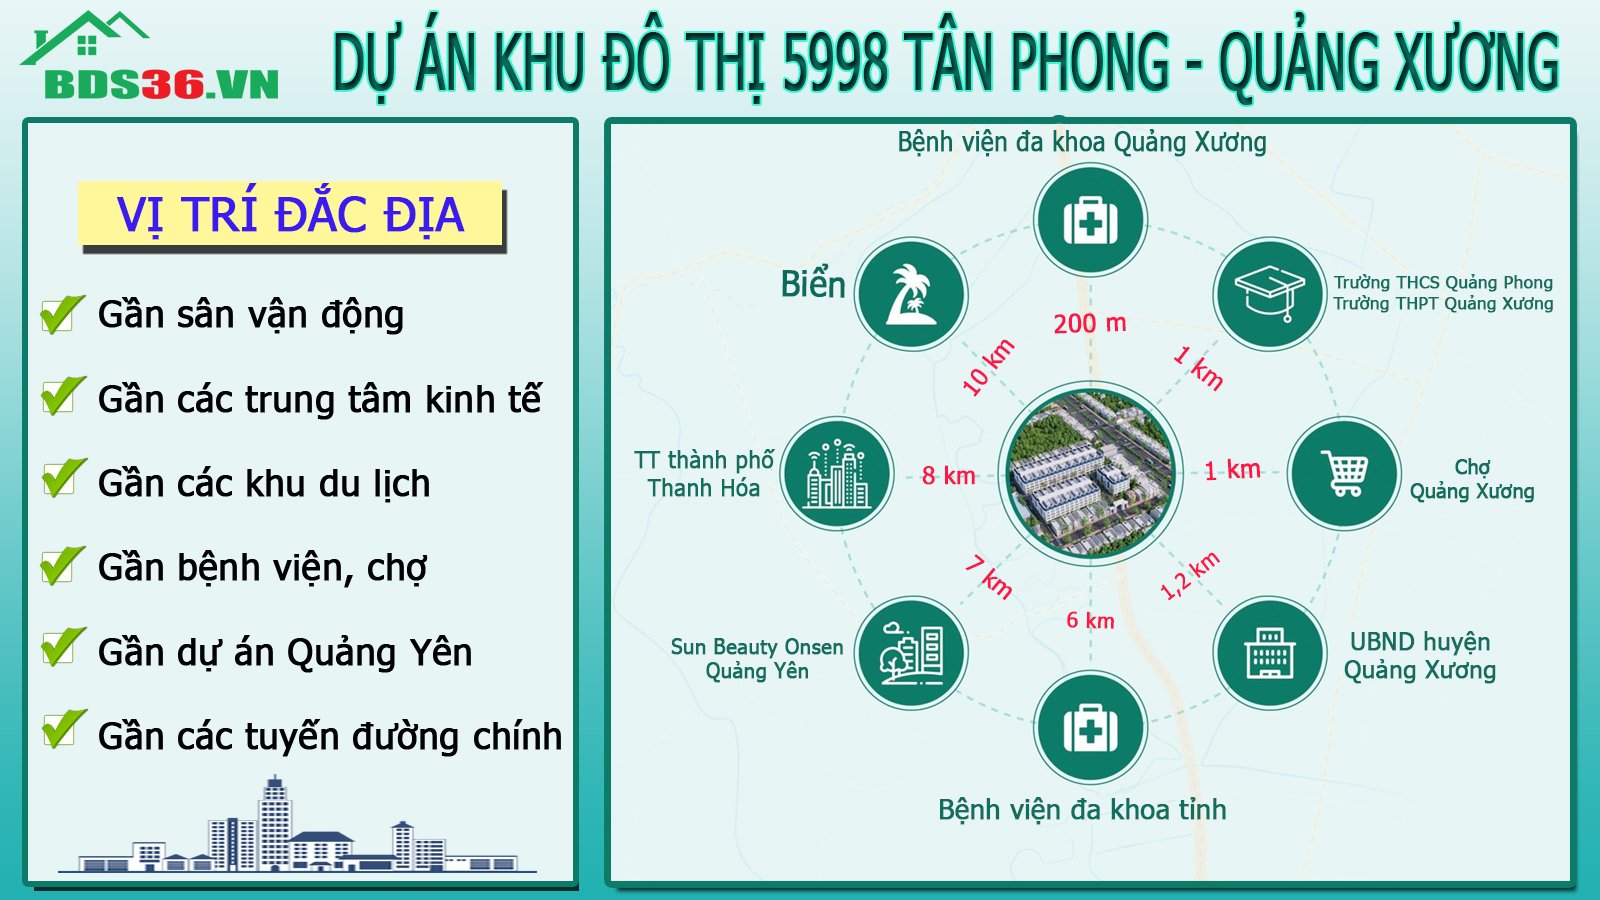 Vị trí đắc địa của dự án 5998 Tân Phong - Quảng Xương